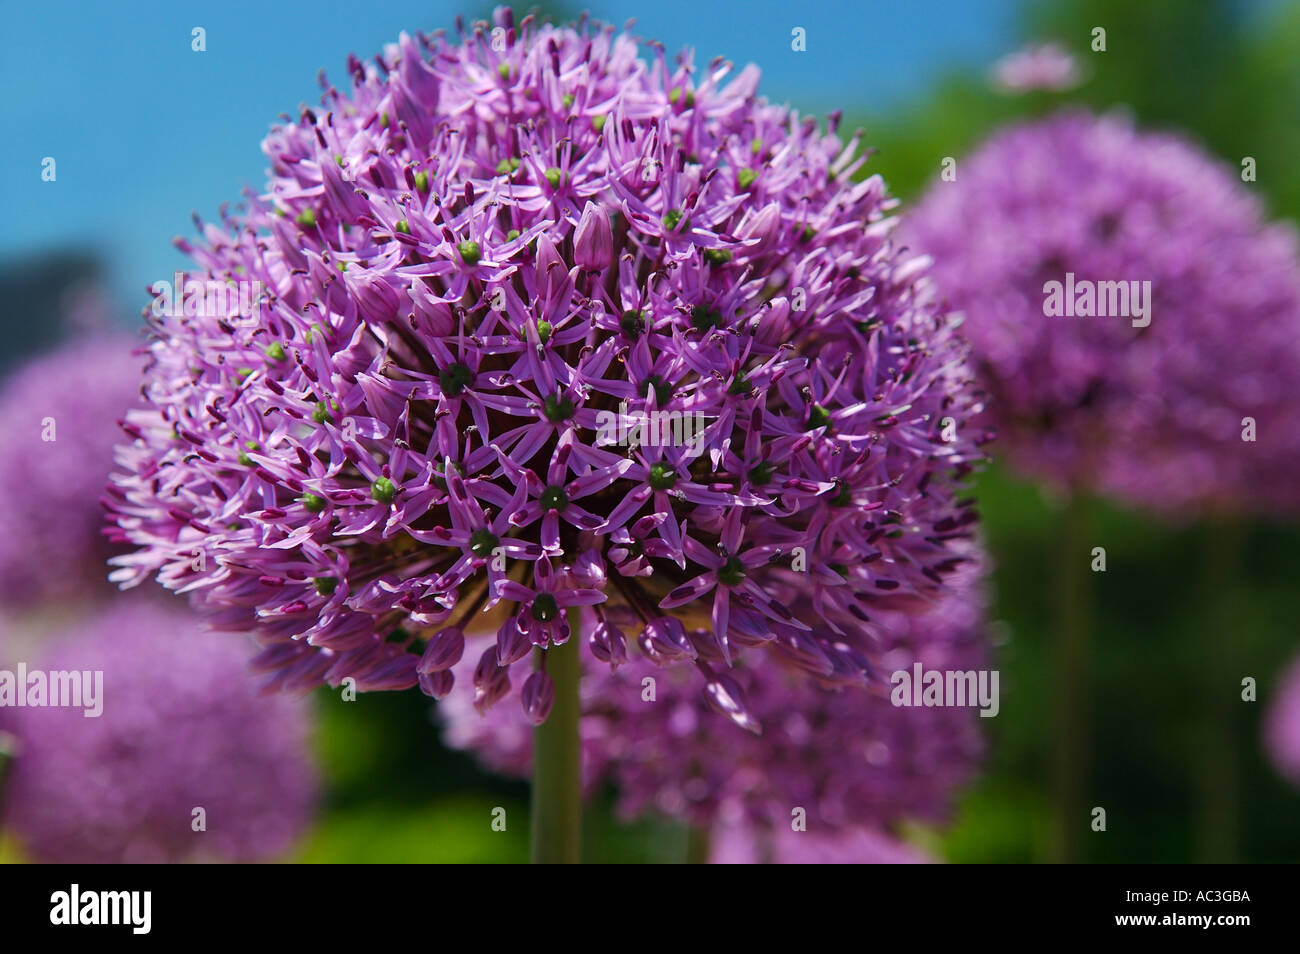 Purple Allium flower close up Stock Photo